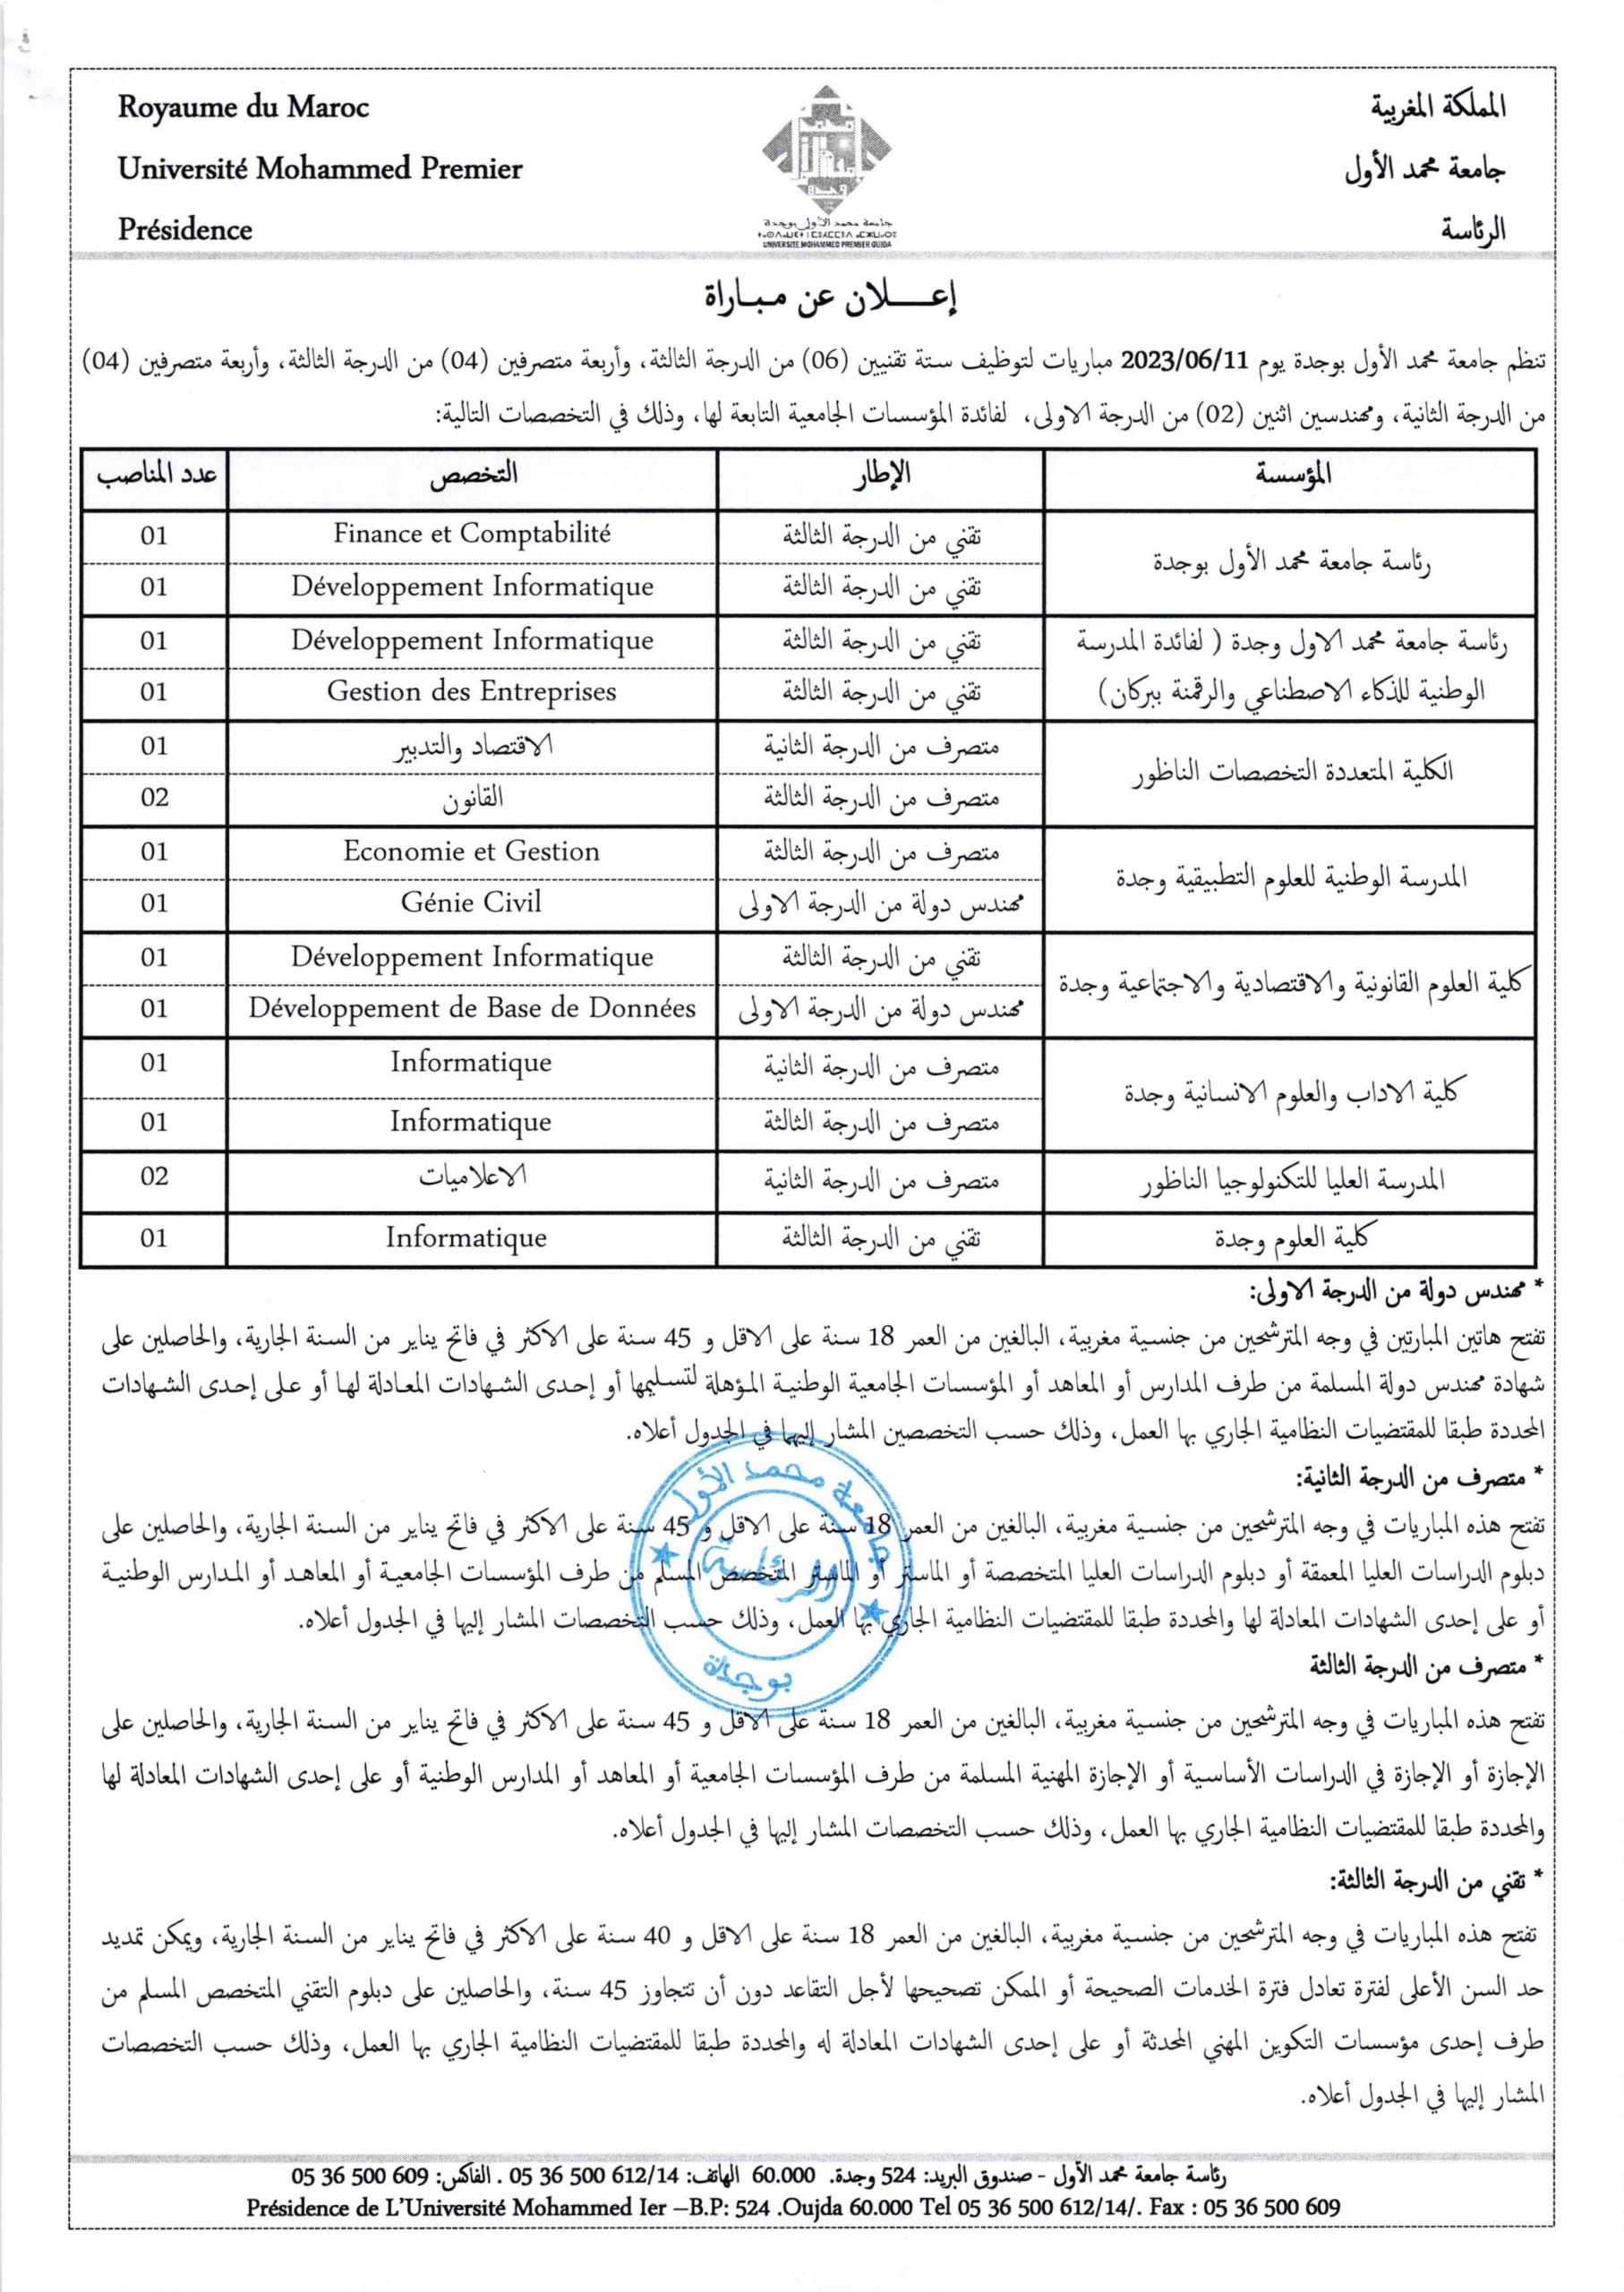 جامعة محمد الأول وجدة مباراة توظيف 16 اطر ادارية وتقنية آخر أجل 1 يونيو 2023